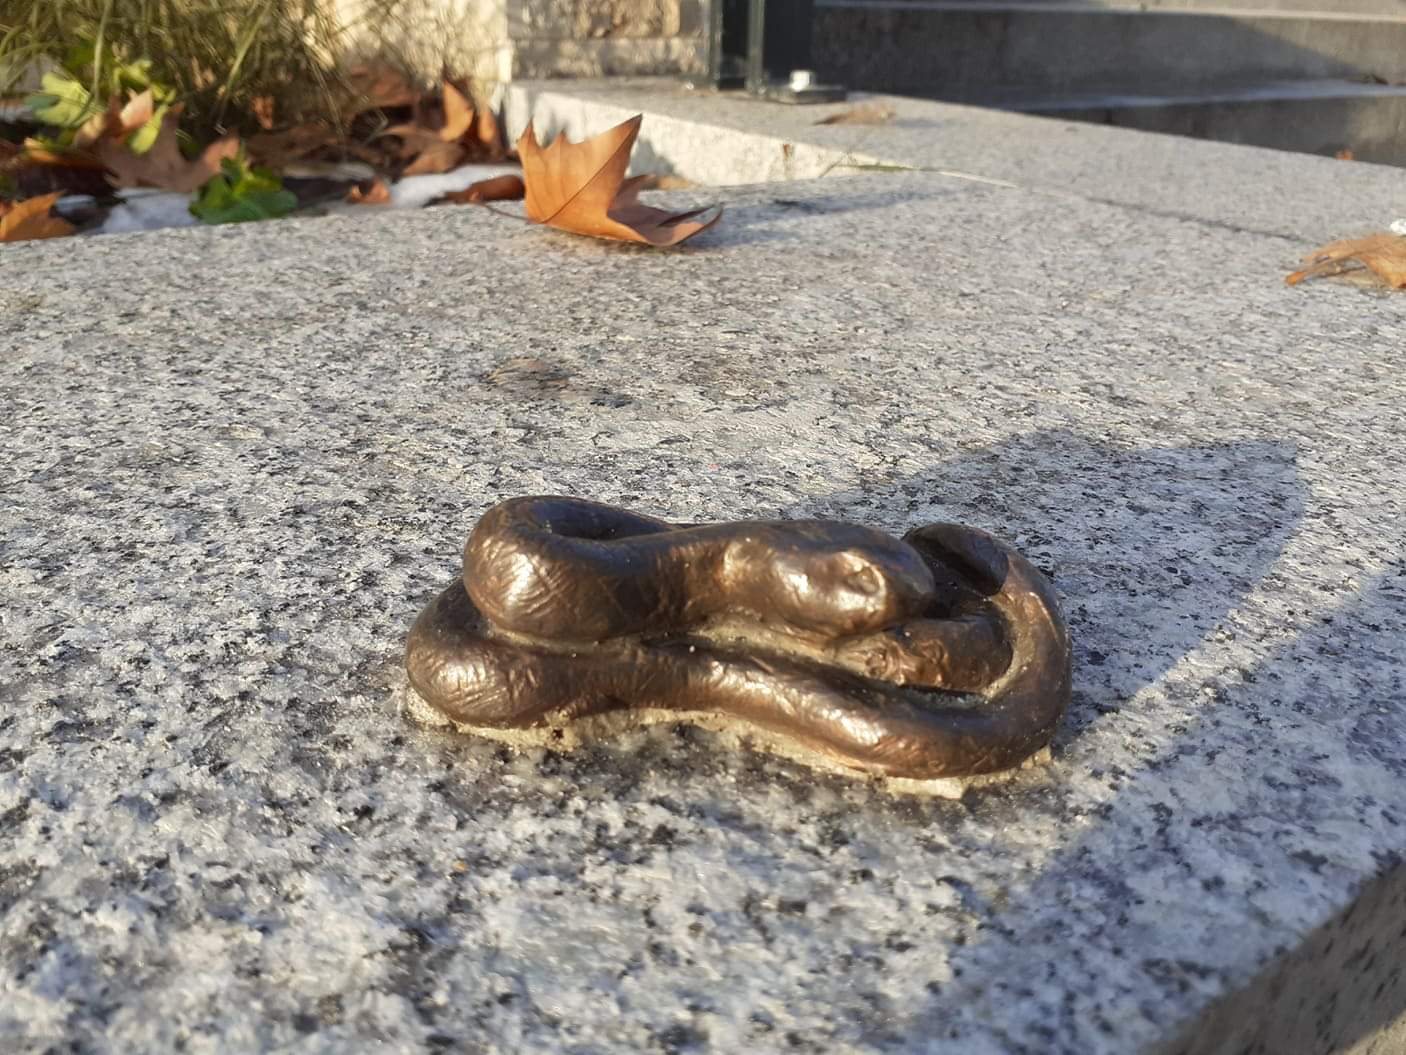 Újabb miniszobor Budapesten – ezúttal Kőbánya kapott egy kígyószobrot!